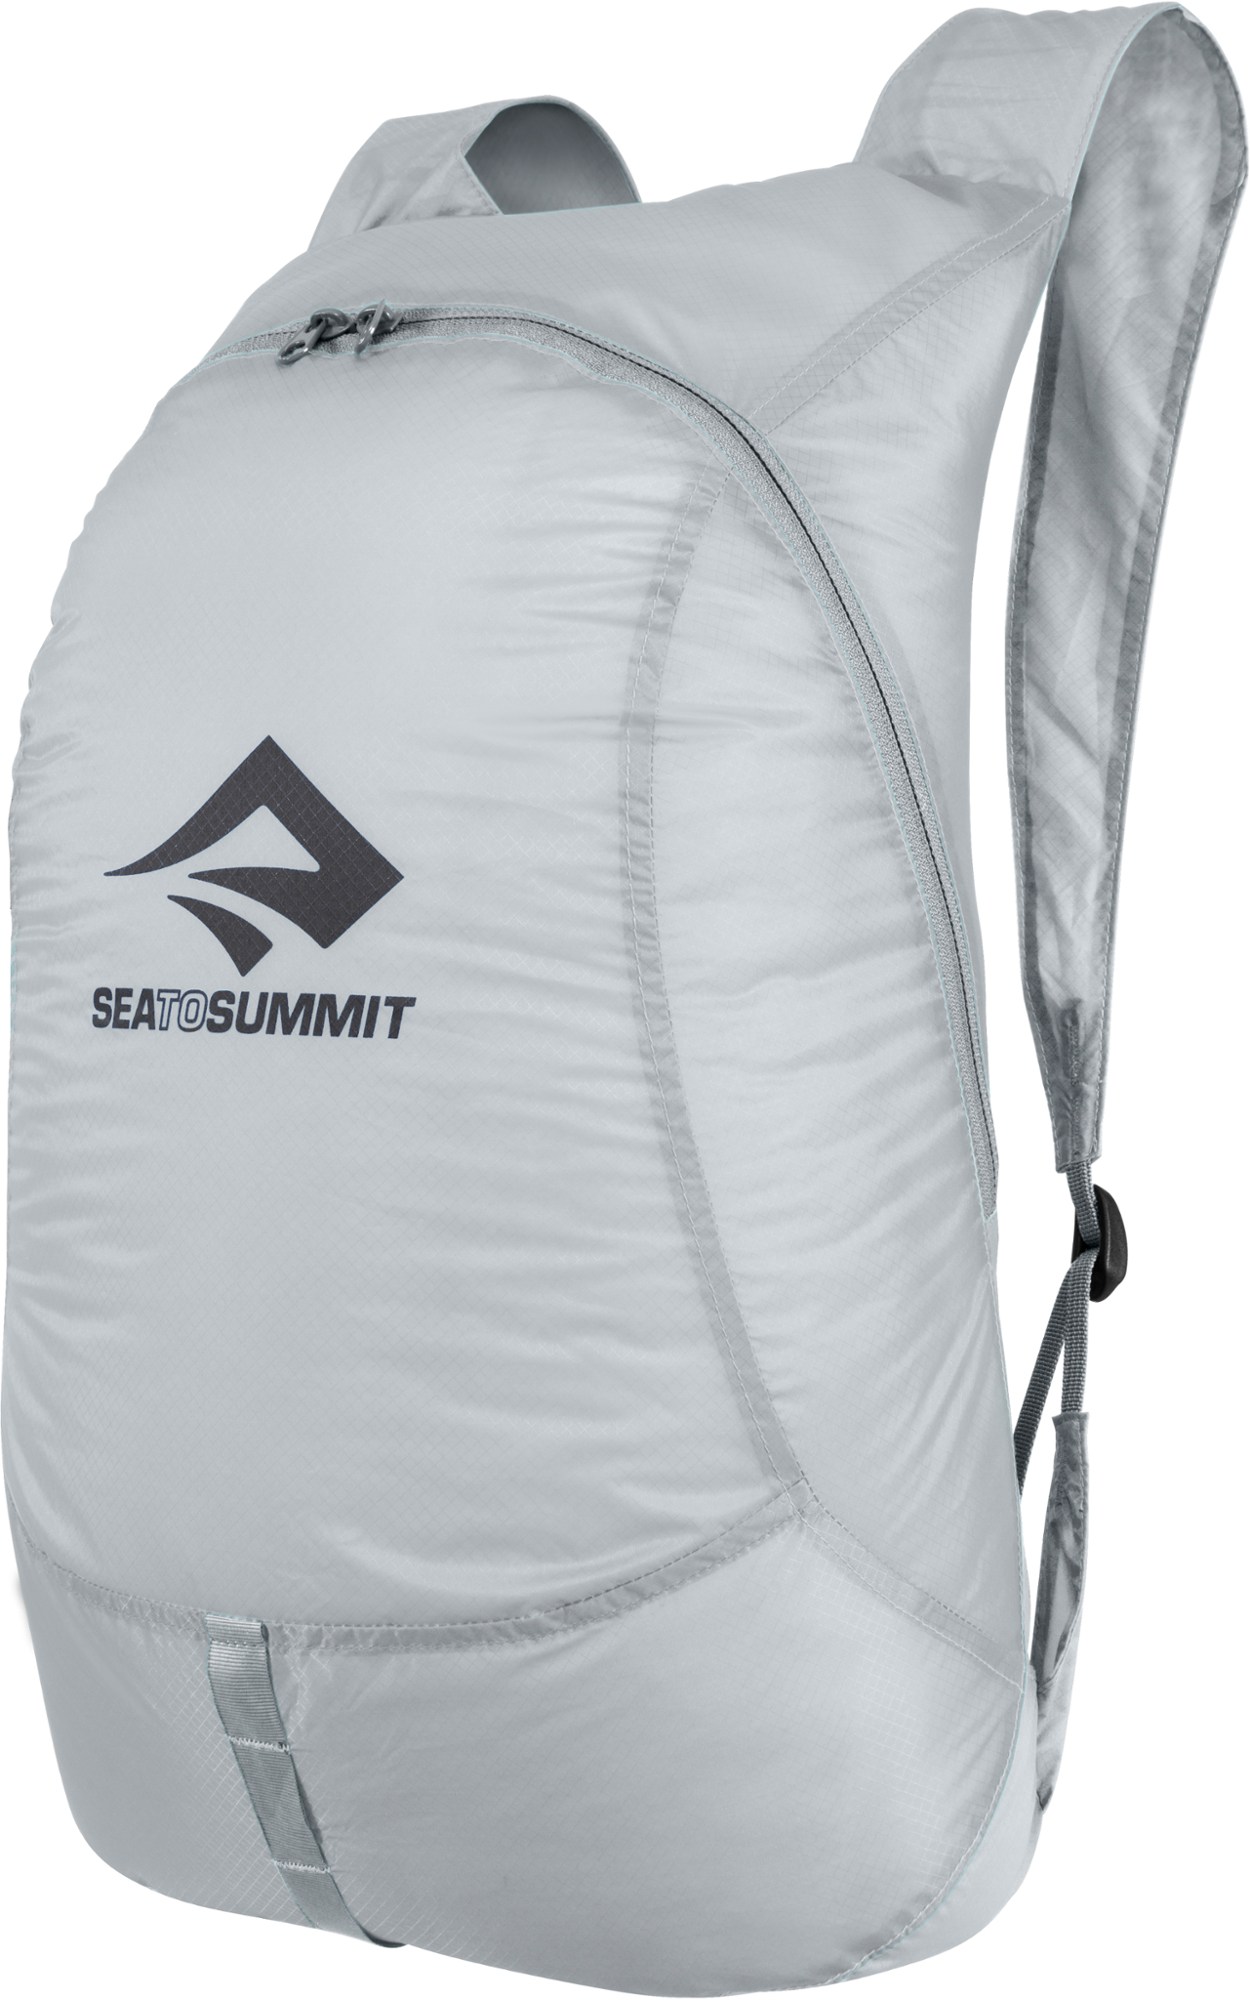 Дневной пакет Ultra-Sil Travel Sea to Summit, серый рюкзак дорожная сумка сверхлегкая складная альпинистская сумка для мужчин уличный дорожный спортивный рюкзак для бега рюкзак органайзе